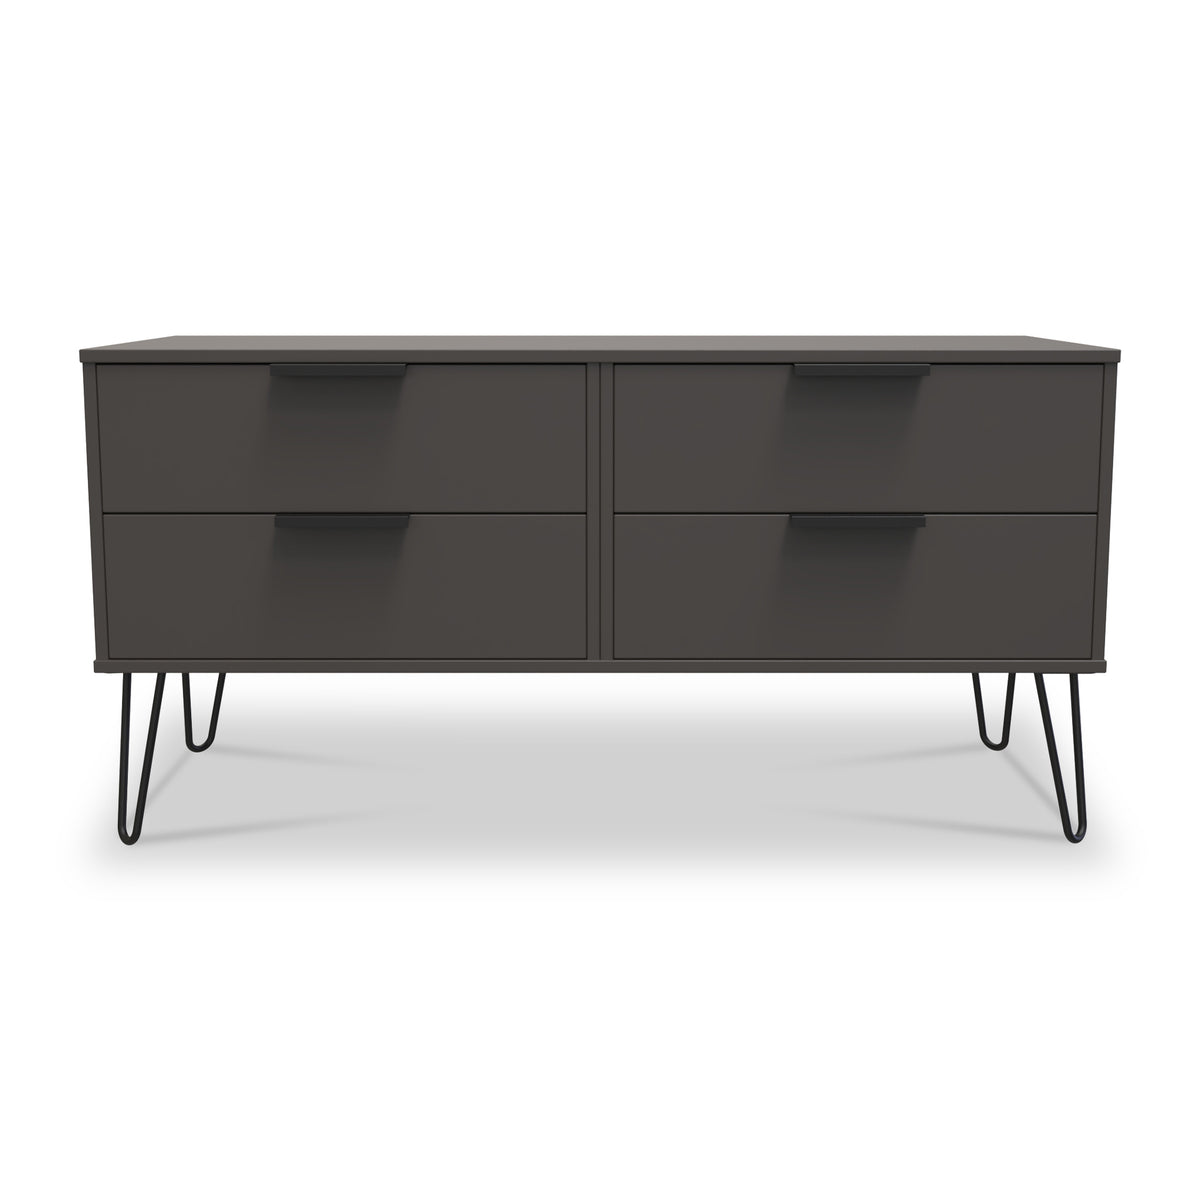 Moreno Graphite Grey 4 Drawer Low Storage Unit from Roseland Furniture